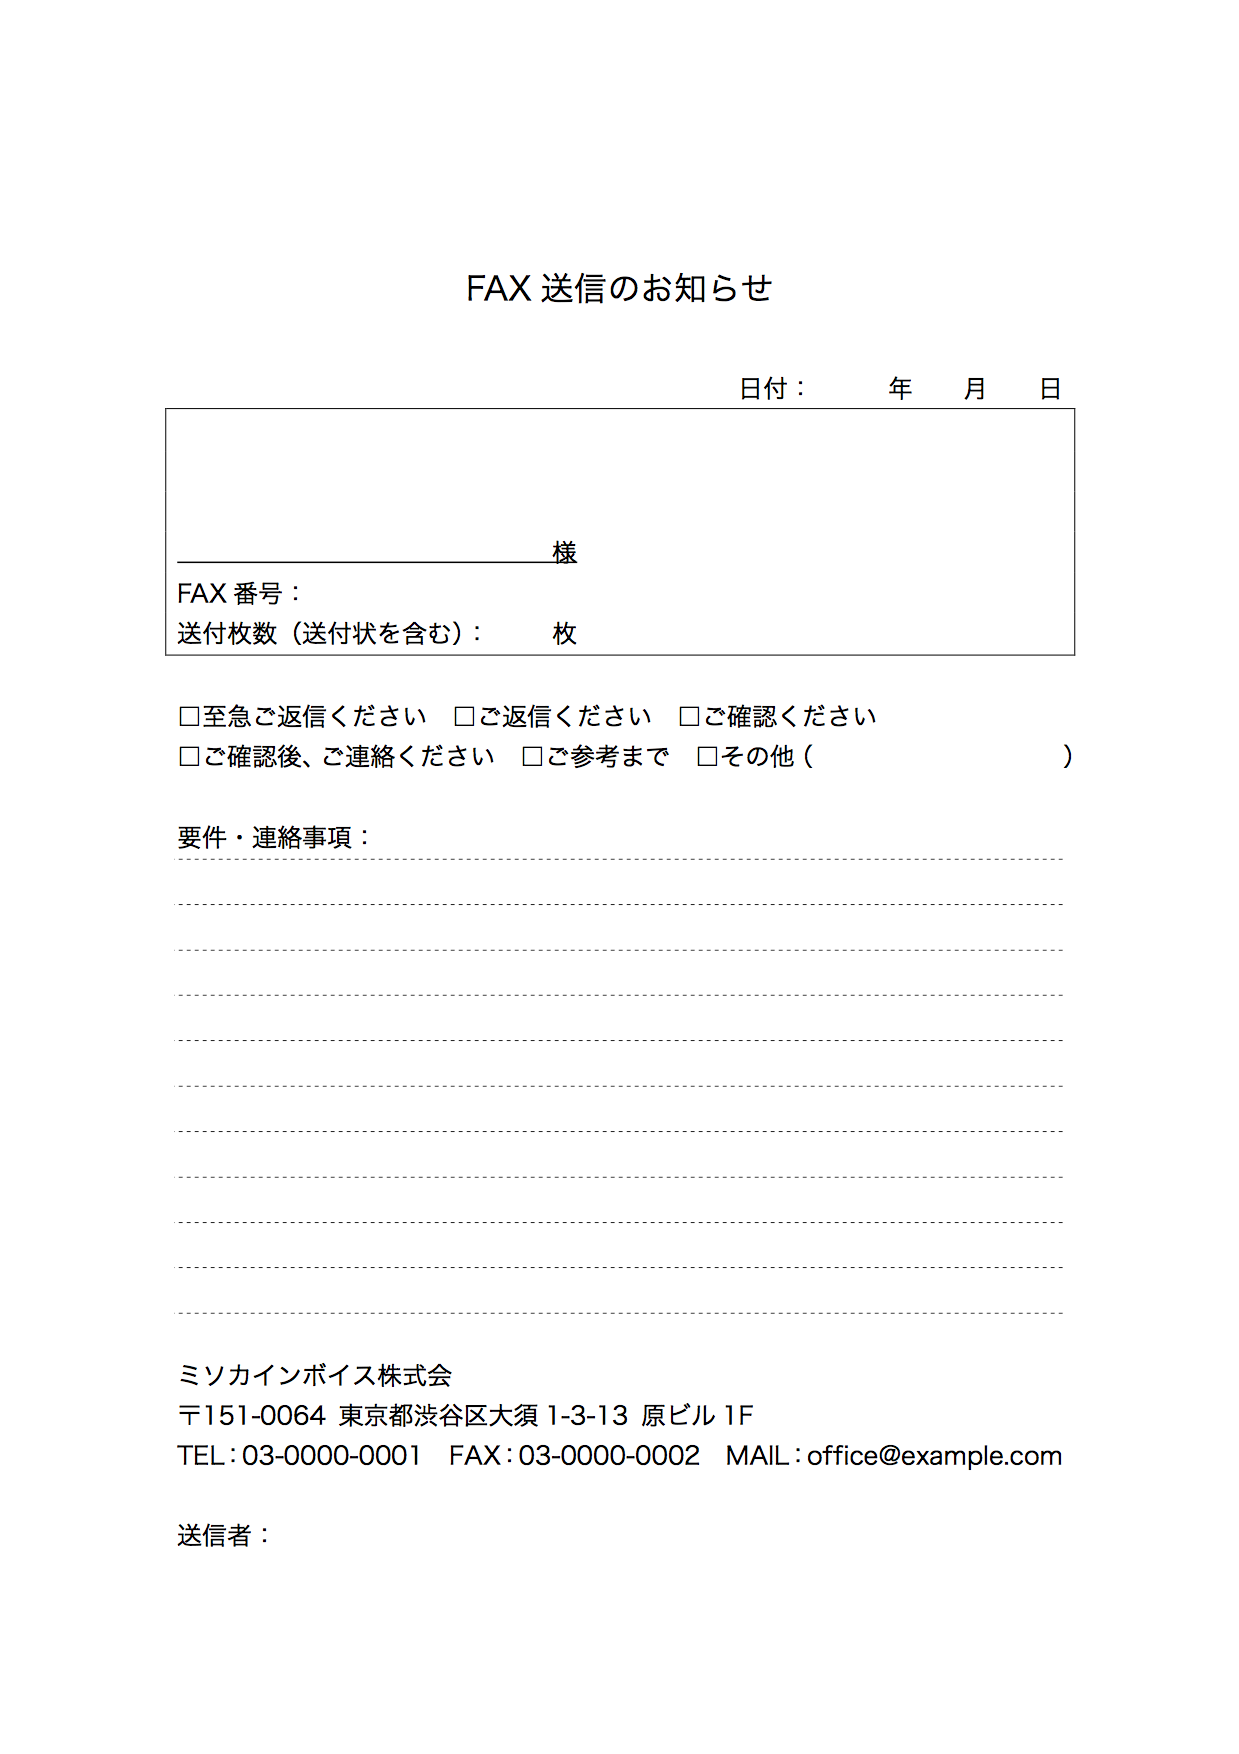 帳票 Fax送付状 のエクセルテンプレート フォーマット ひな形 の無料配布